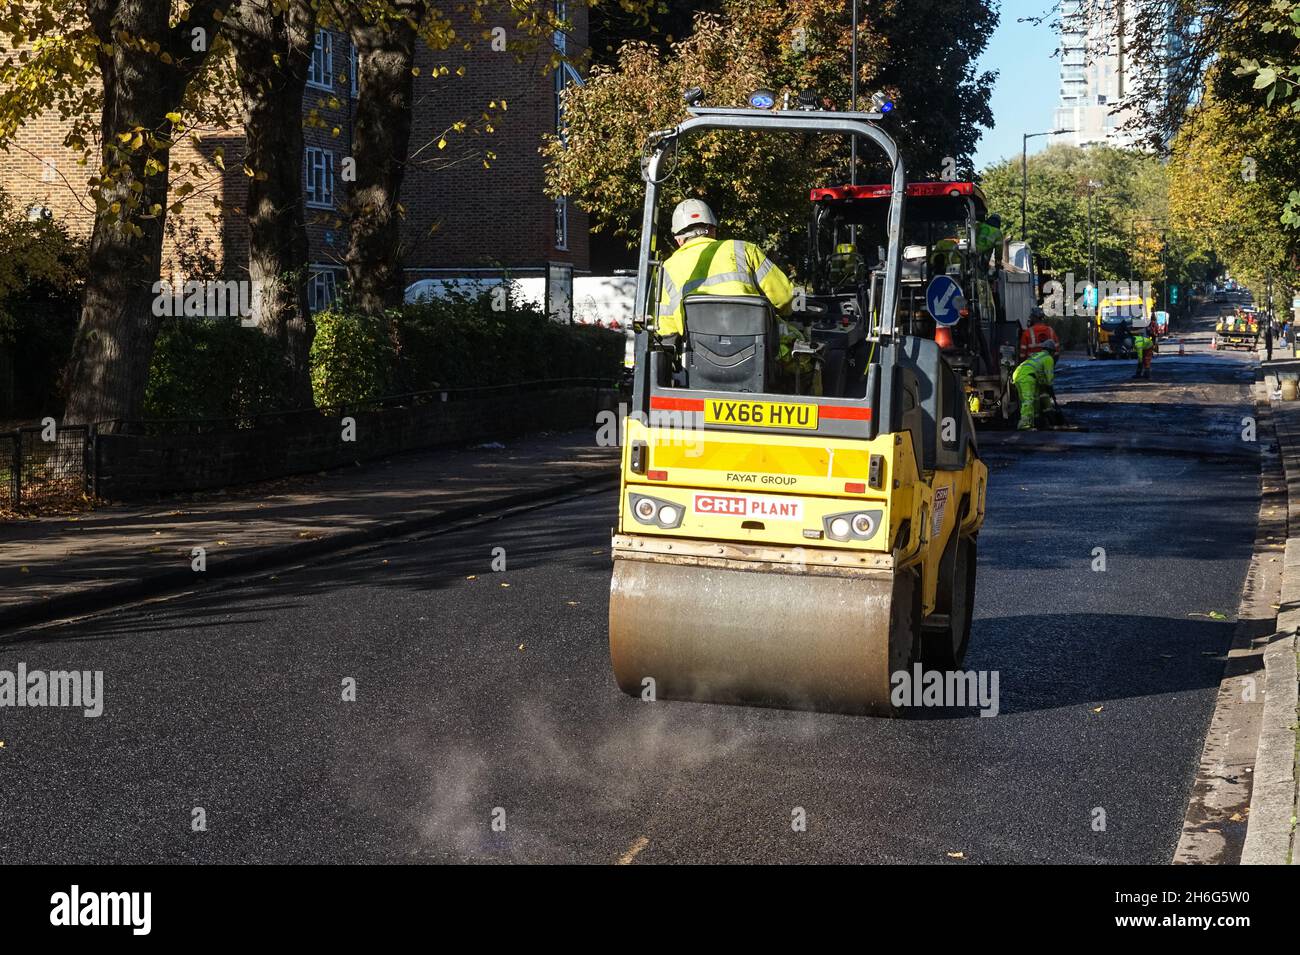 Les travailleurs qui utilisent le roller dans les travaux de resurfaçage de rue à Londres Angleterre Royaume-Uni Banque D'Images